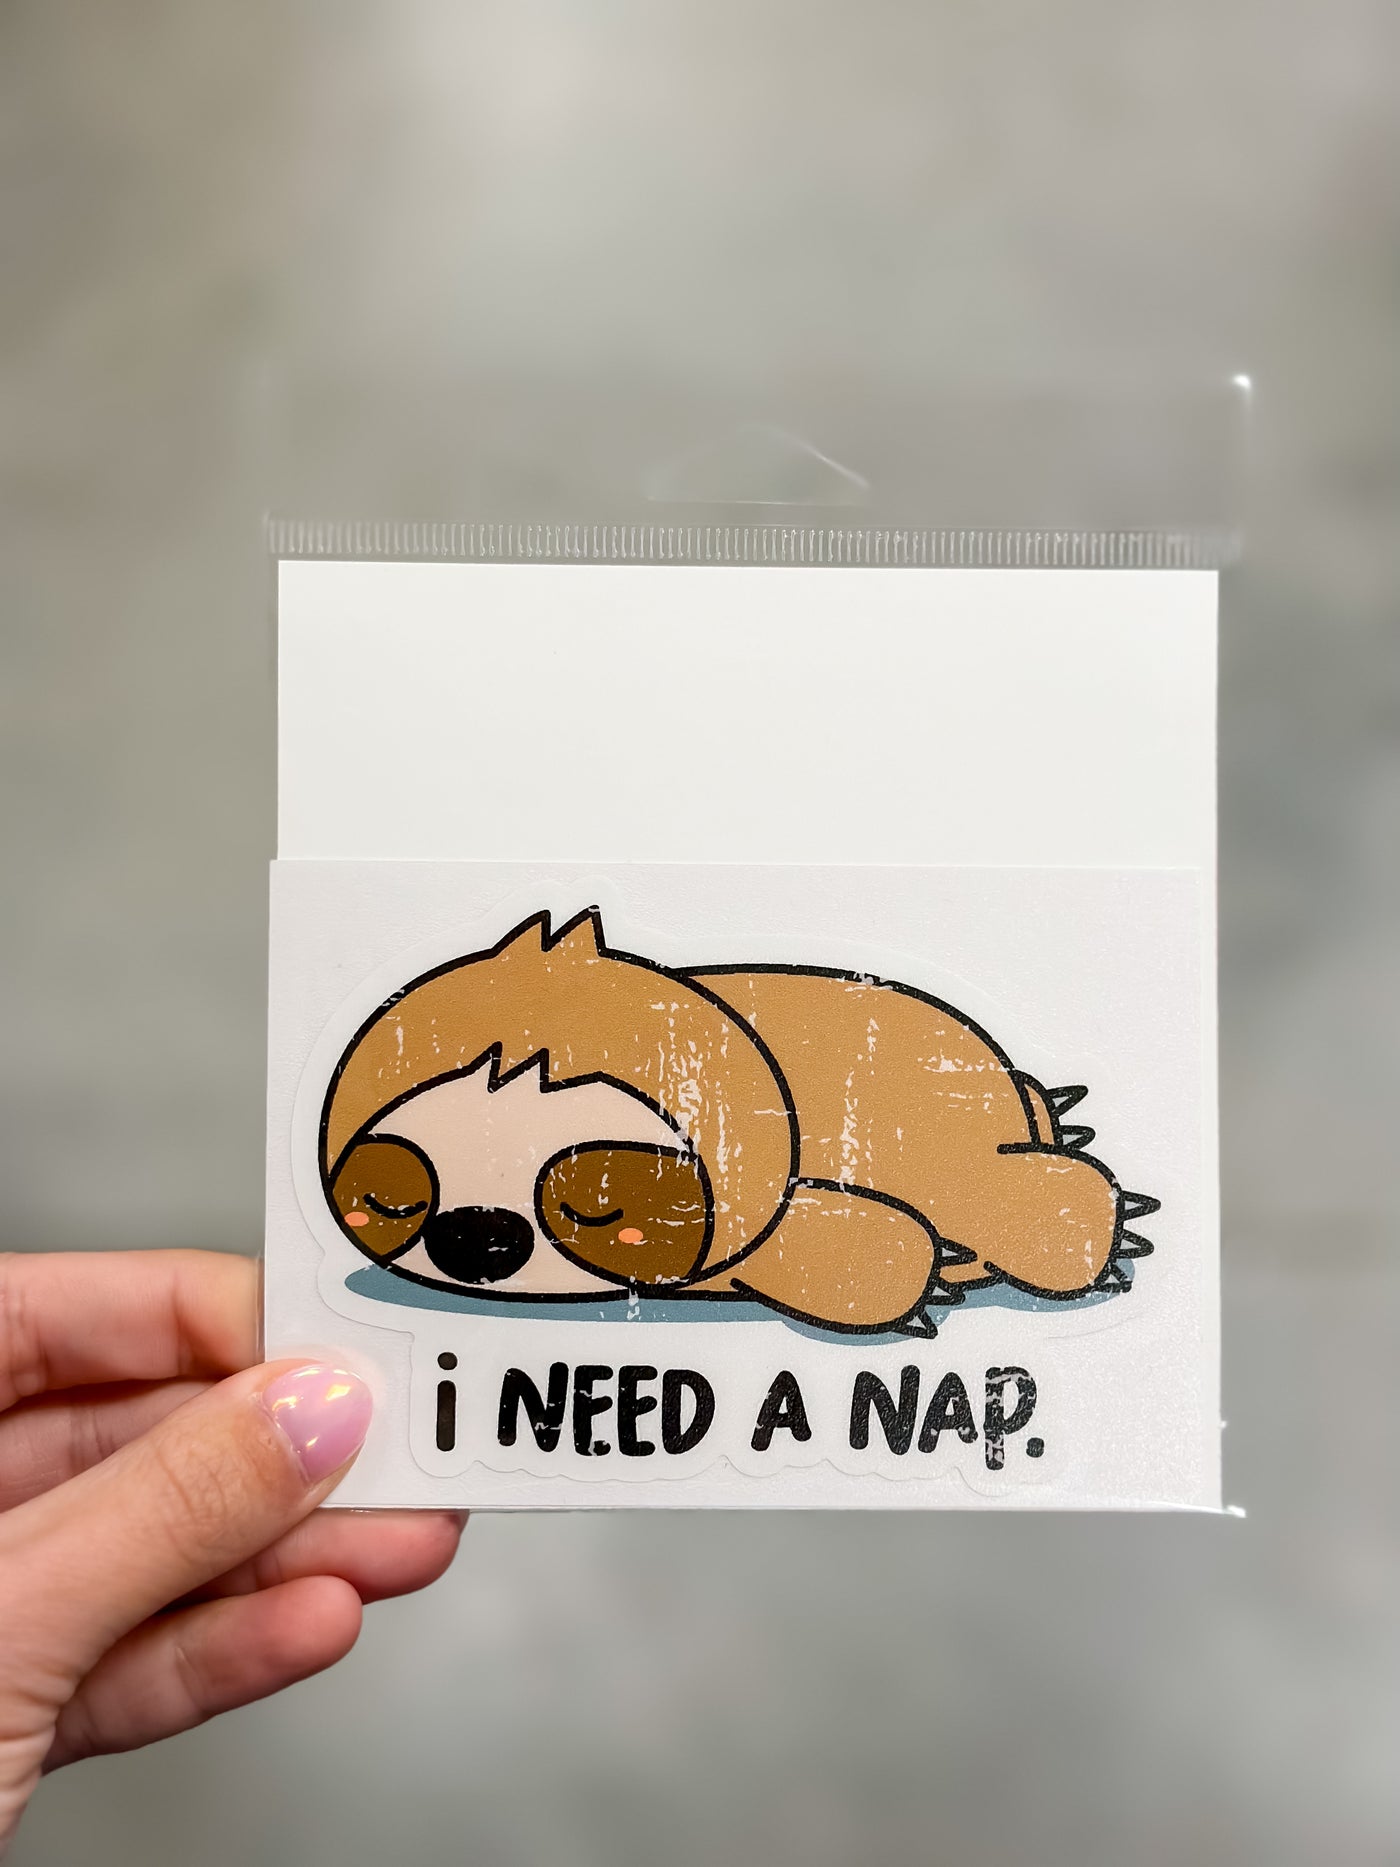 I need a nap - Sloth sticker